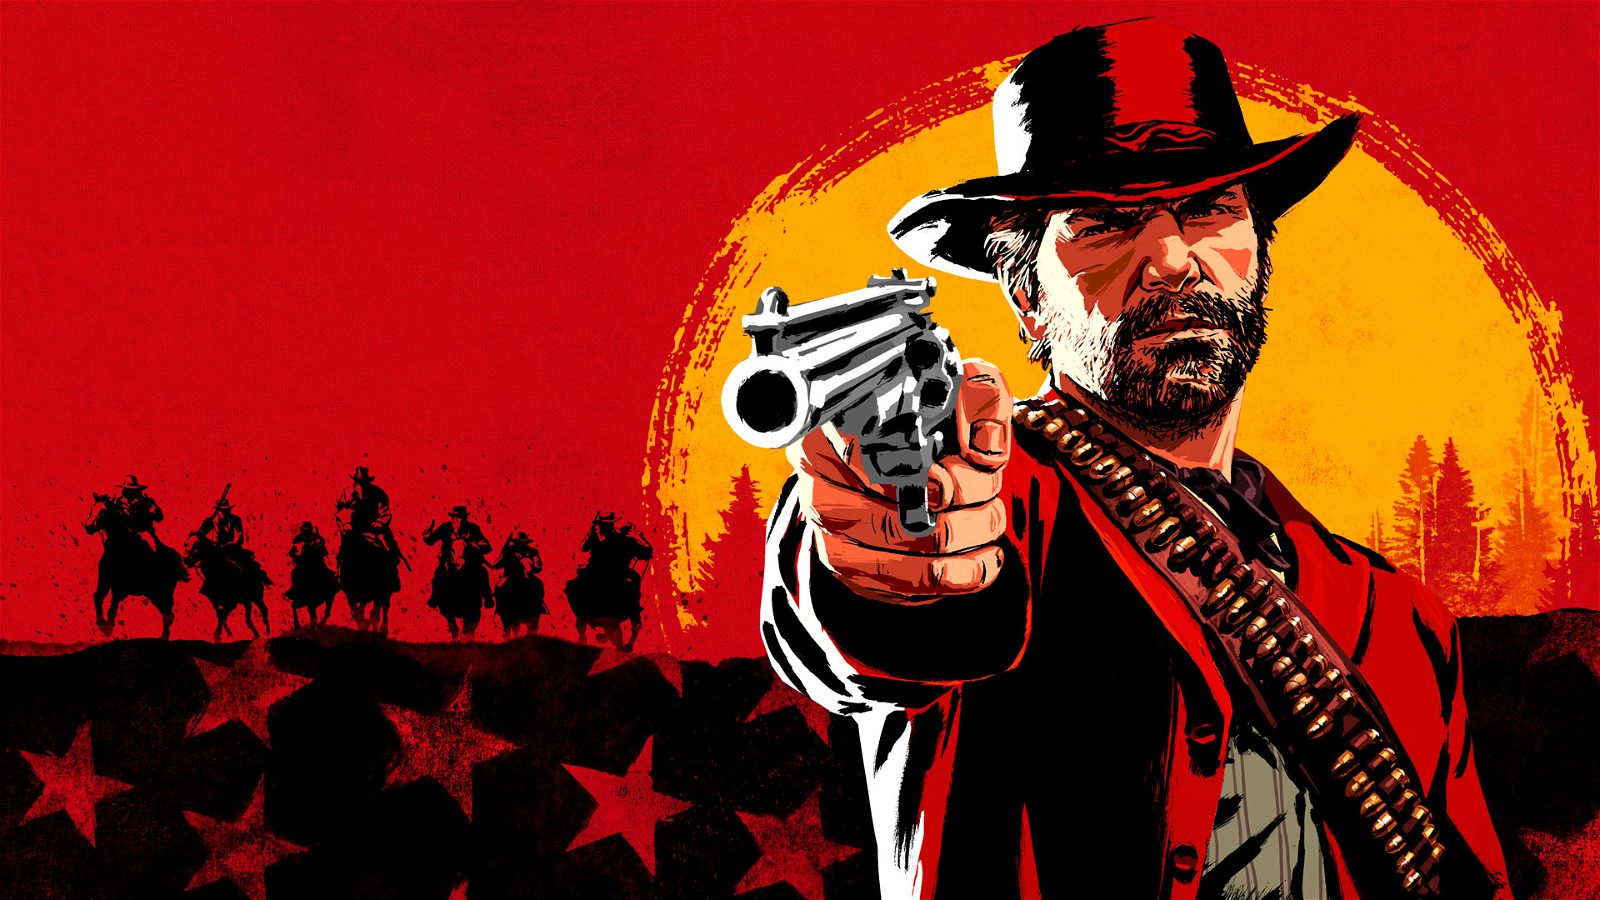 Red Dead Redemption 2 | Rockstar Games